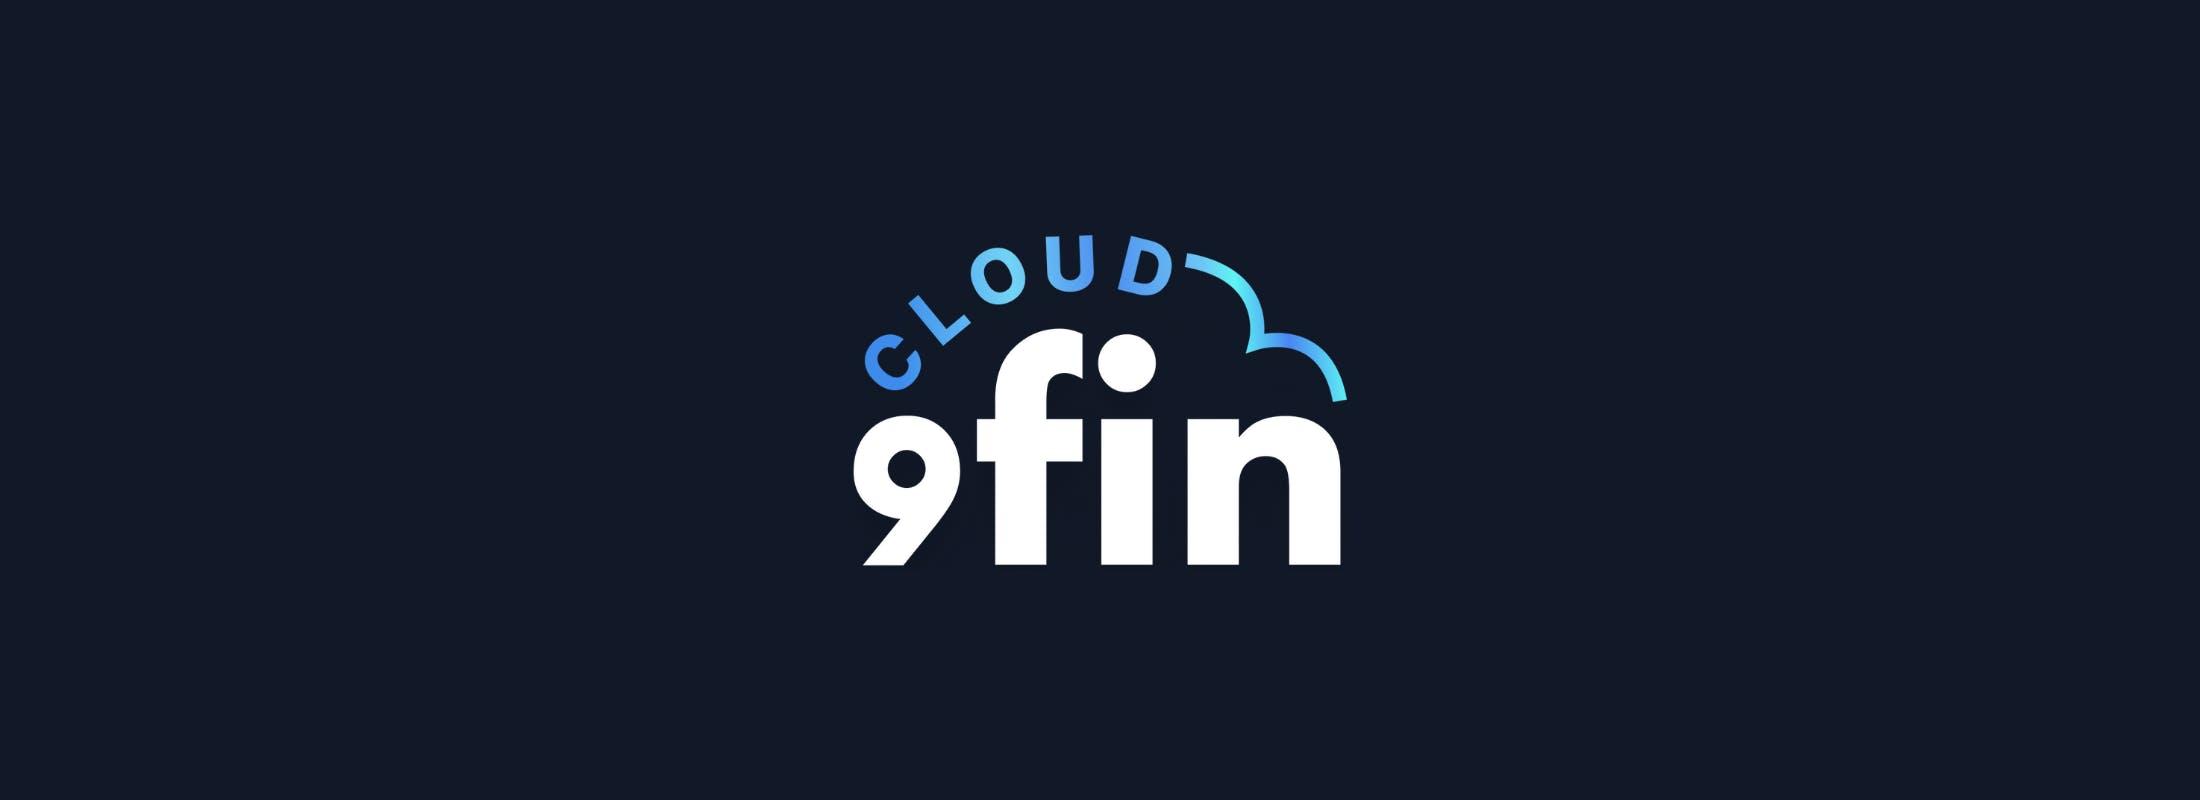 Cloud 9fin — Control, Altice, Delete